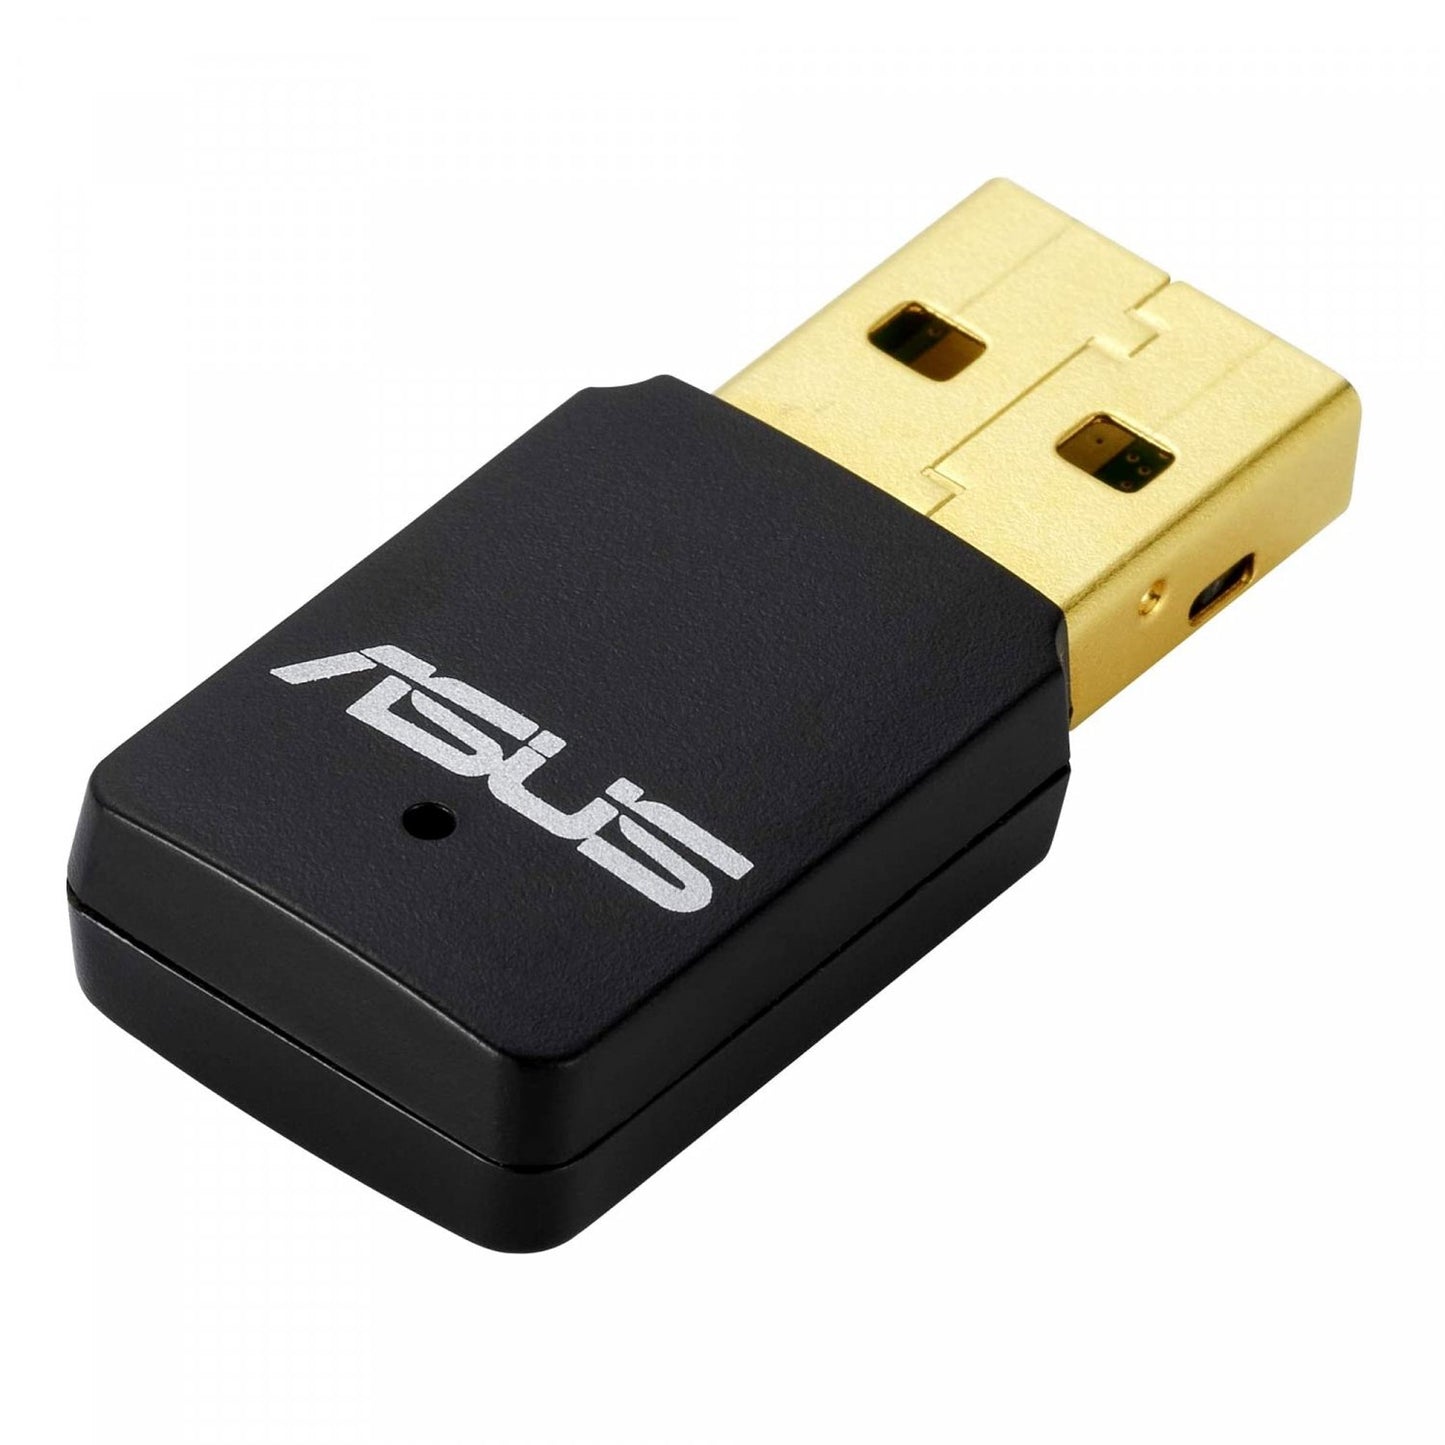 ASUS USB-N13 C1 Wireless-N300 USB-adapter - Bivakshop